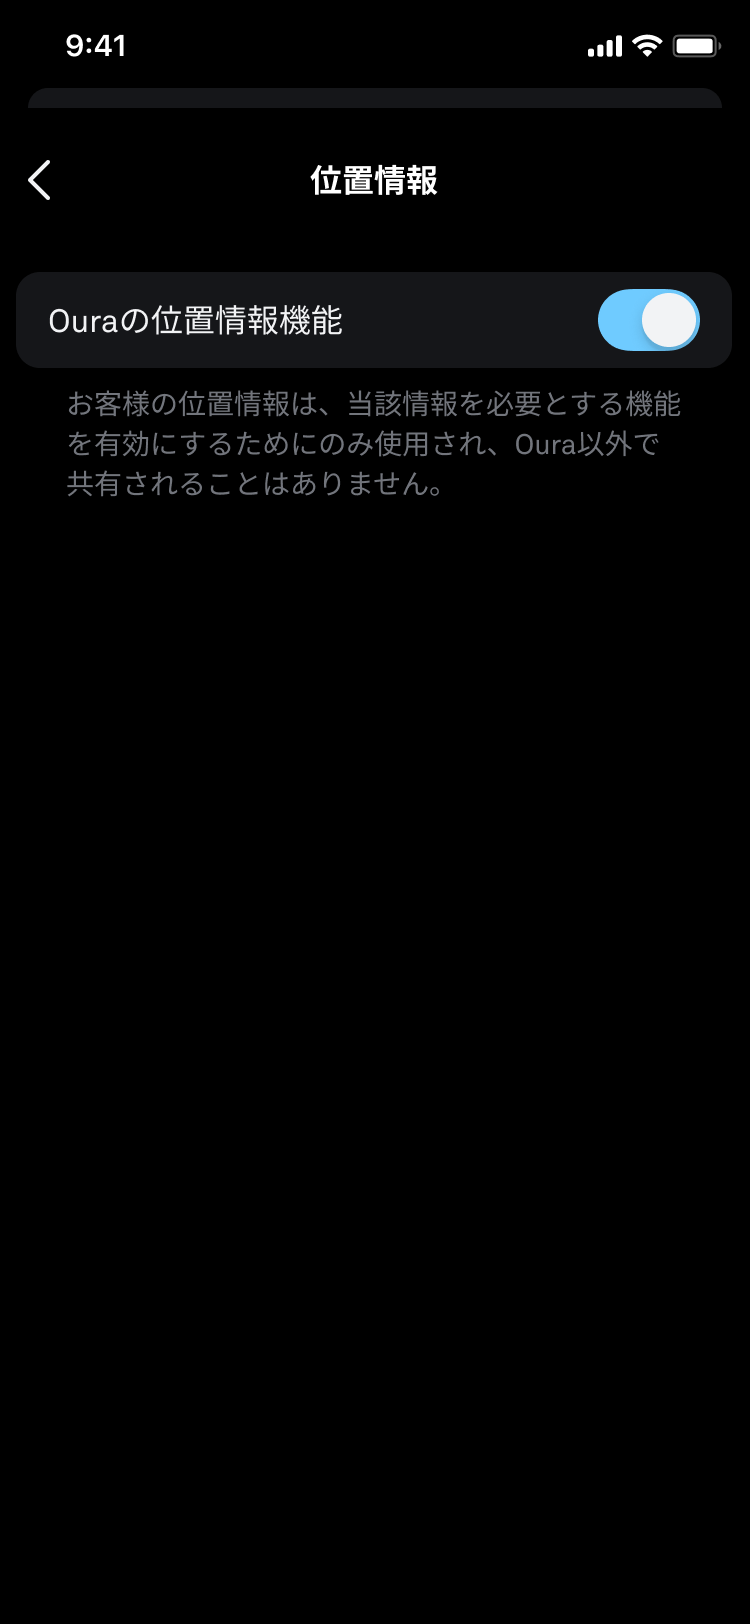 ロケ地という文字が書かれた携帯電話の画面。 [Ouraの位置情報機能]という設定があり、青いトグルがオンになっています